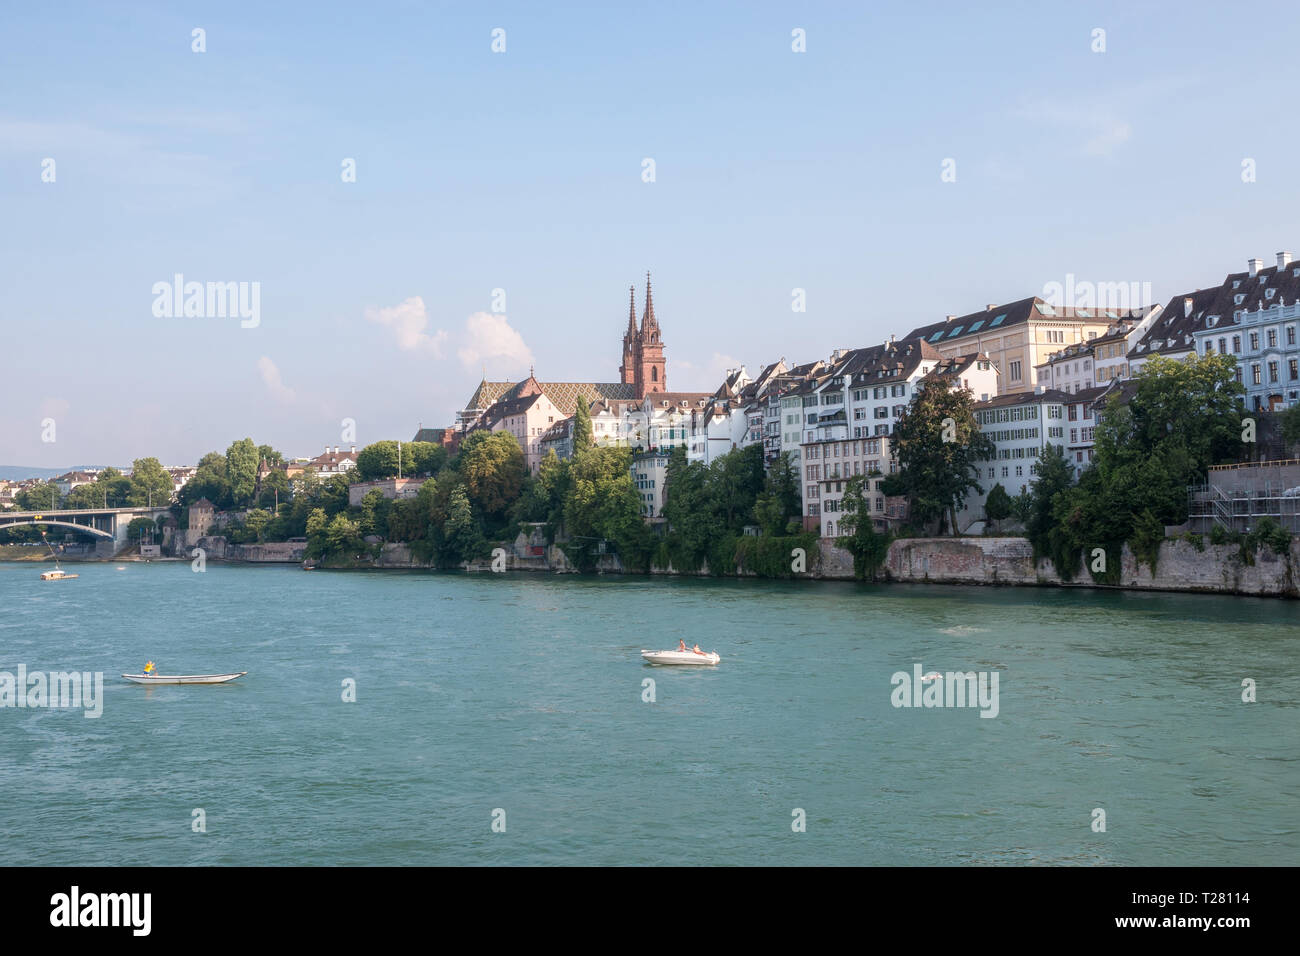 Basel, Schweiz - 23. Juni 2017: Blick auf Basel Stadt und Rhein, in der Schweiz, in Europa. Menschen schwimmen im Wasser. Landschaft Sommer, Sonne Wetter, Stockfoto